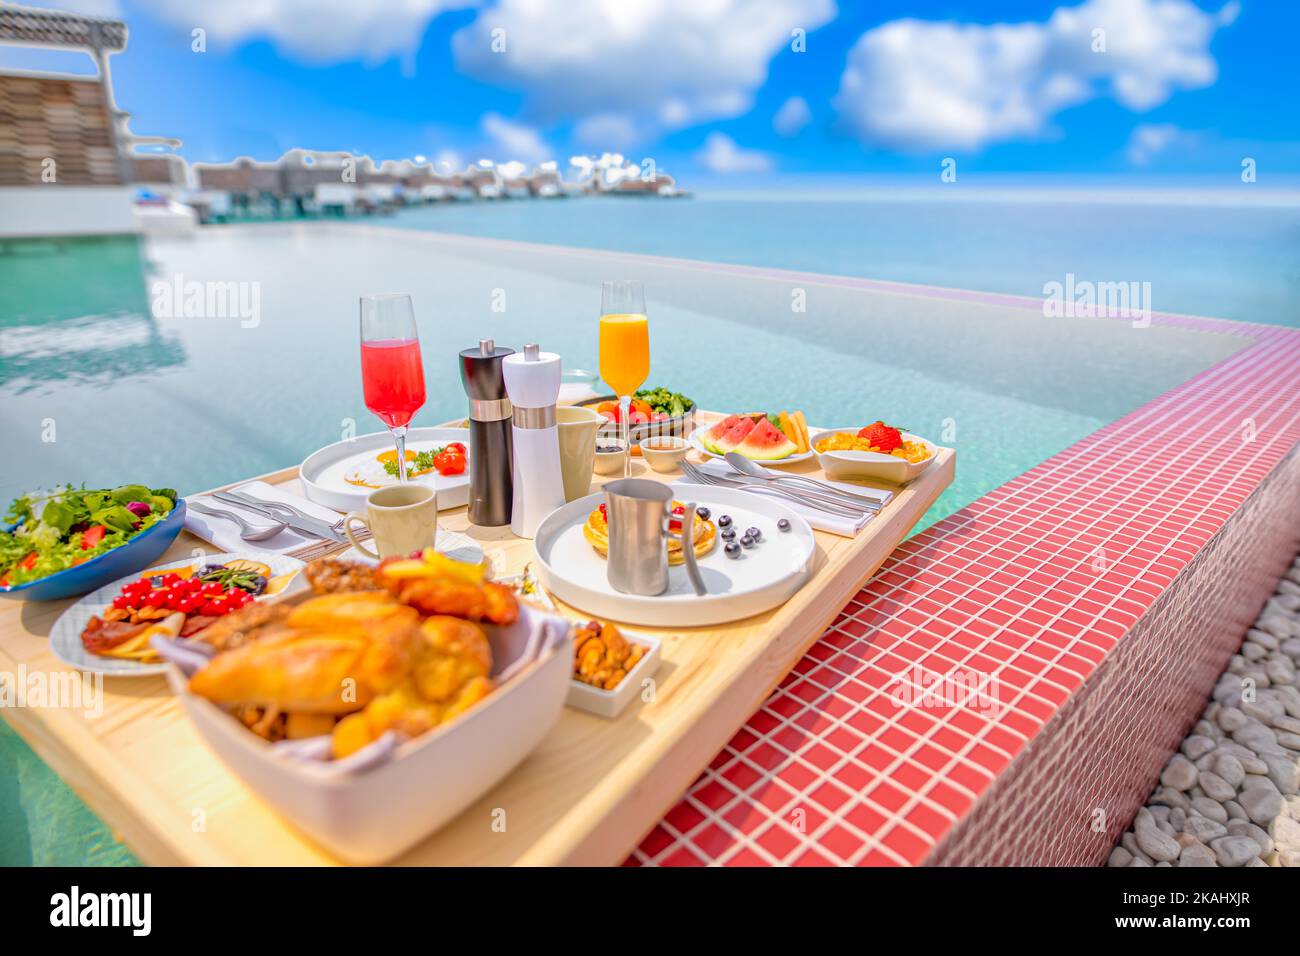 Frühstück im Swimmingpool, schwimmendes Frühstück im luxuriösen tropischen Resort. Tisch relaxen auf ruhigem Poolwasser, gesundes Frühstück und Obstteller Stockfoto